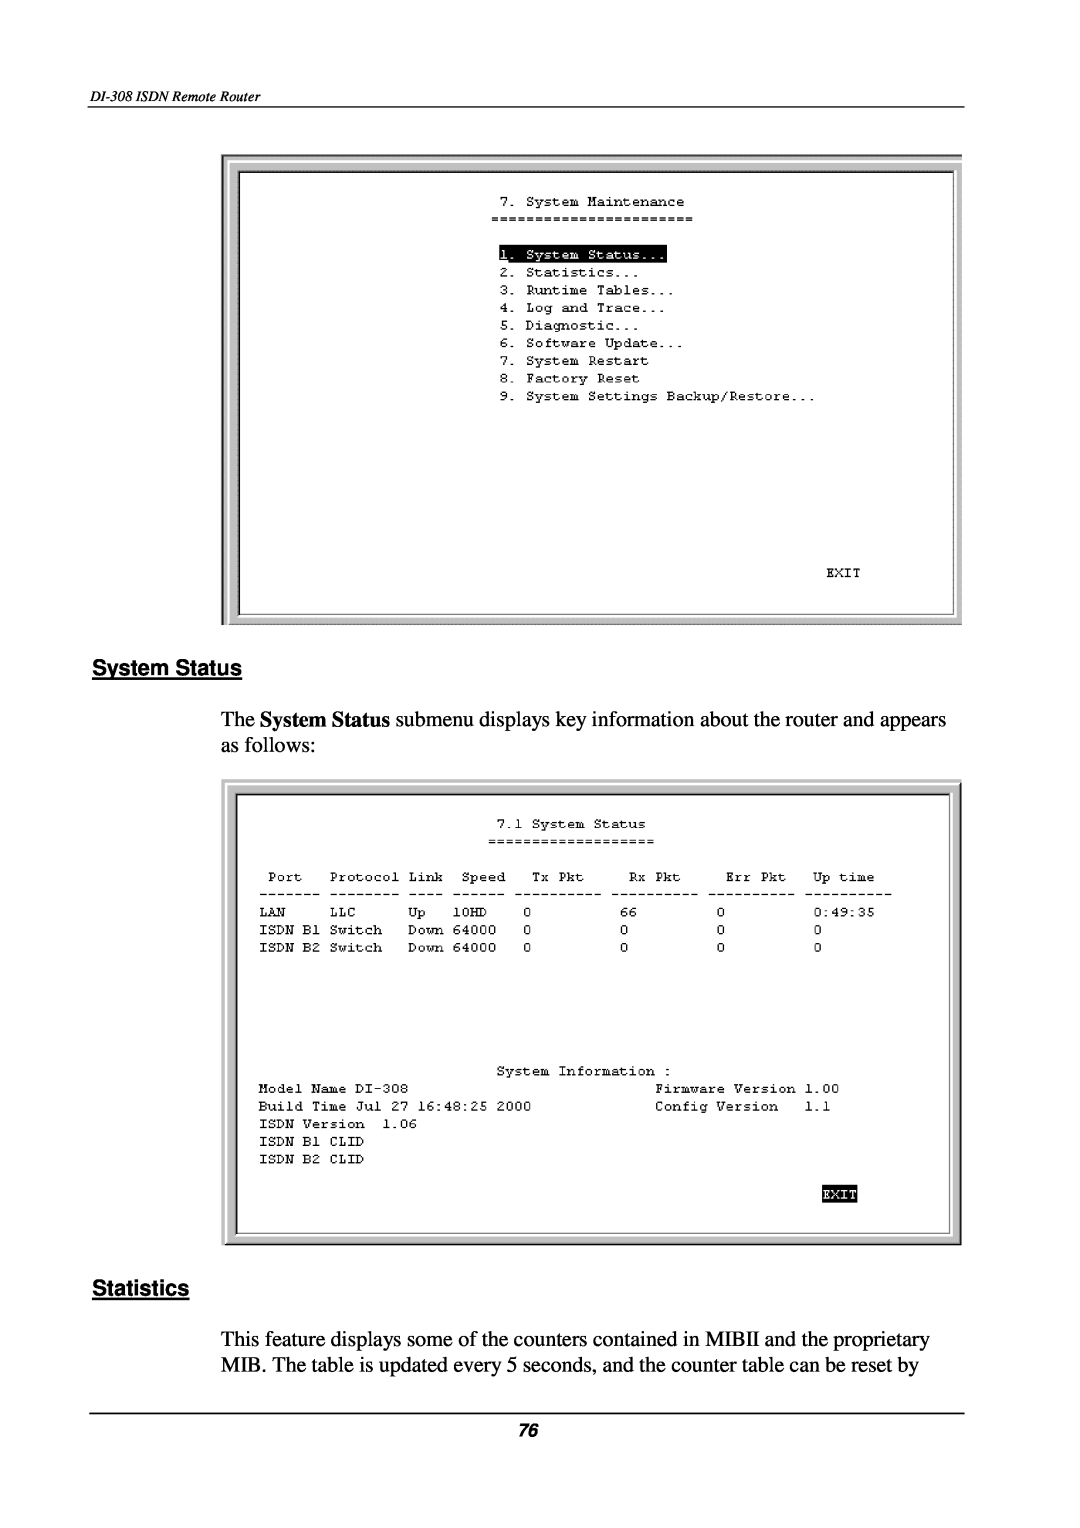 D-Link DI-308 manual System Status, Statistics 